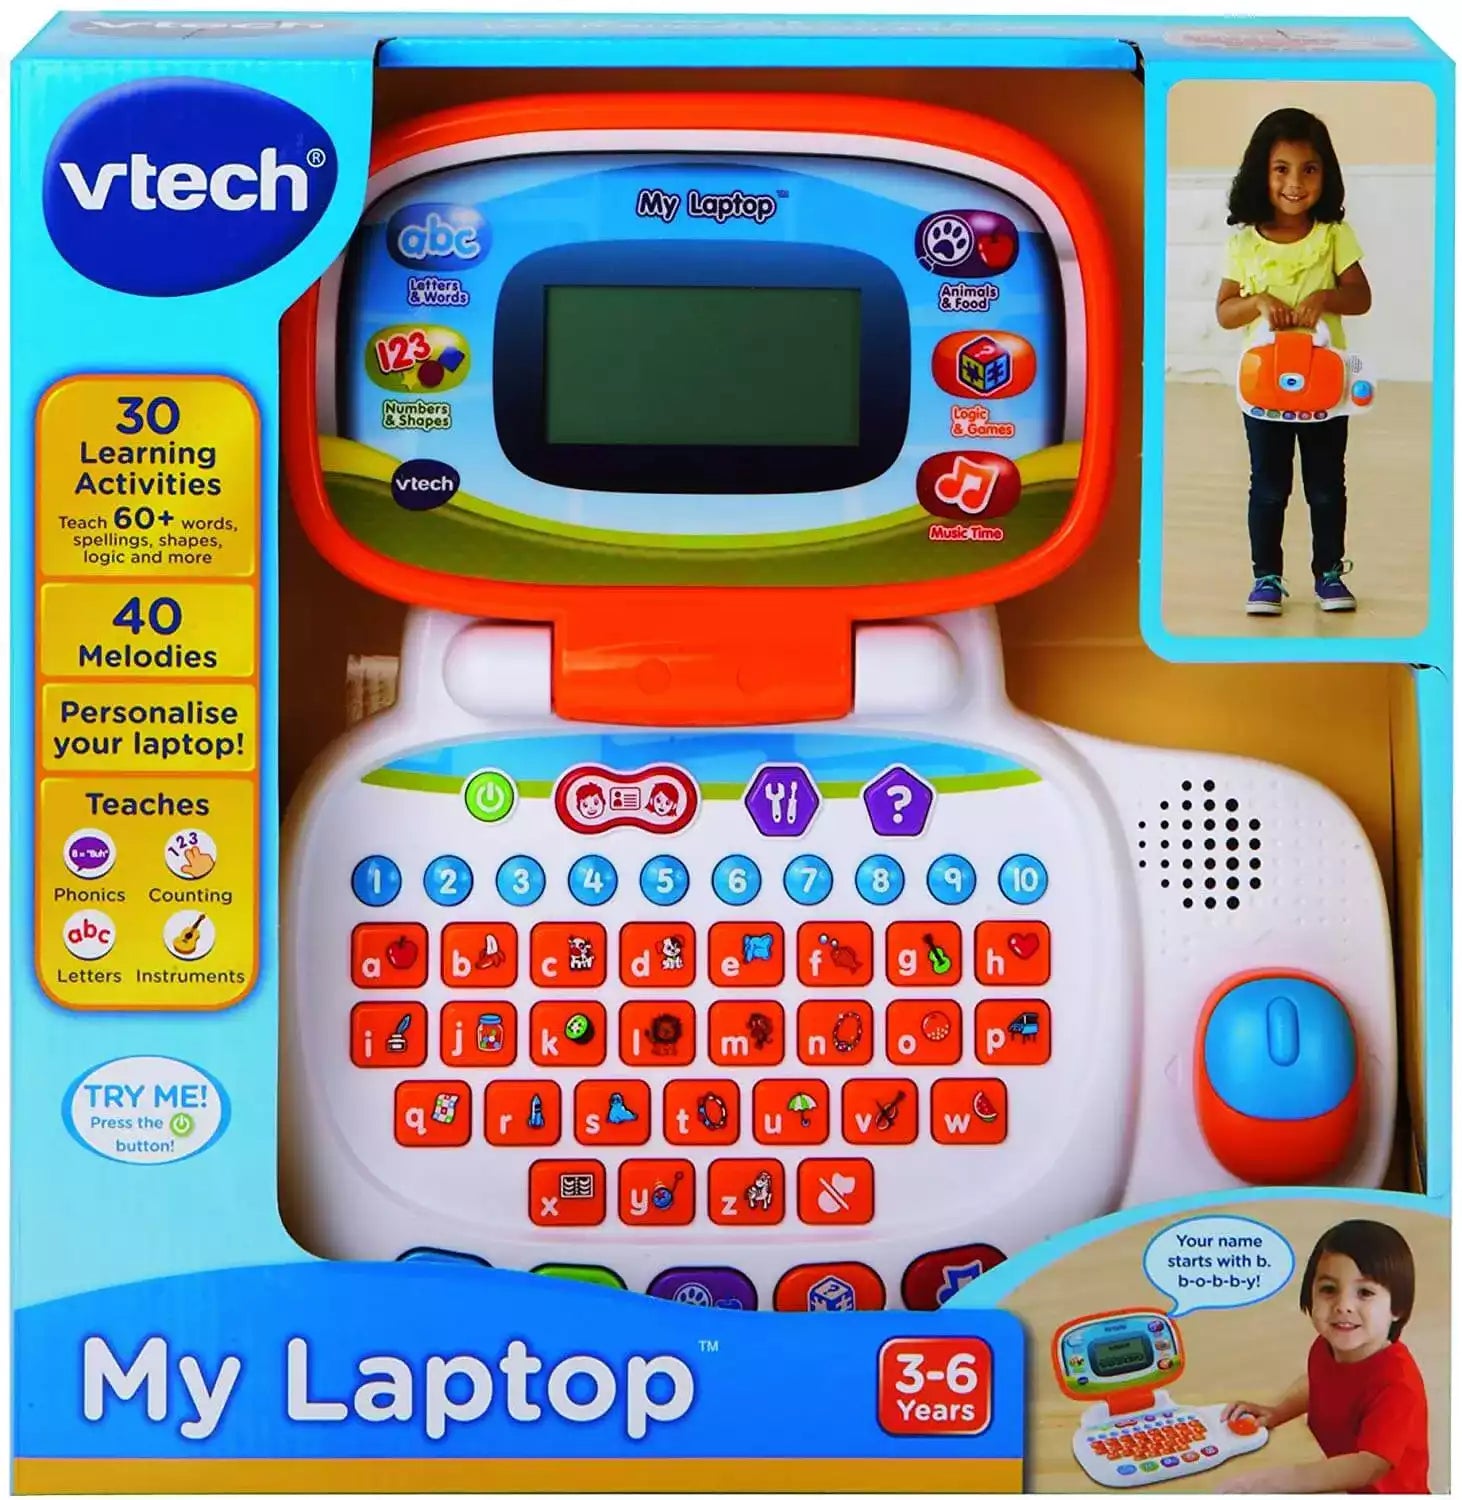 Shop vtech laptop - Vtech my laptop for kids - shop vtech toys at The Toy Room.